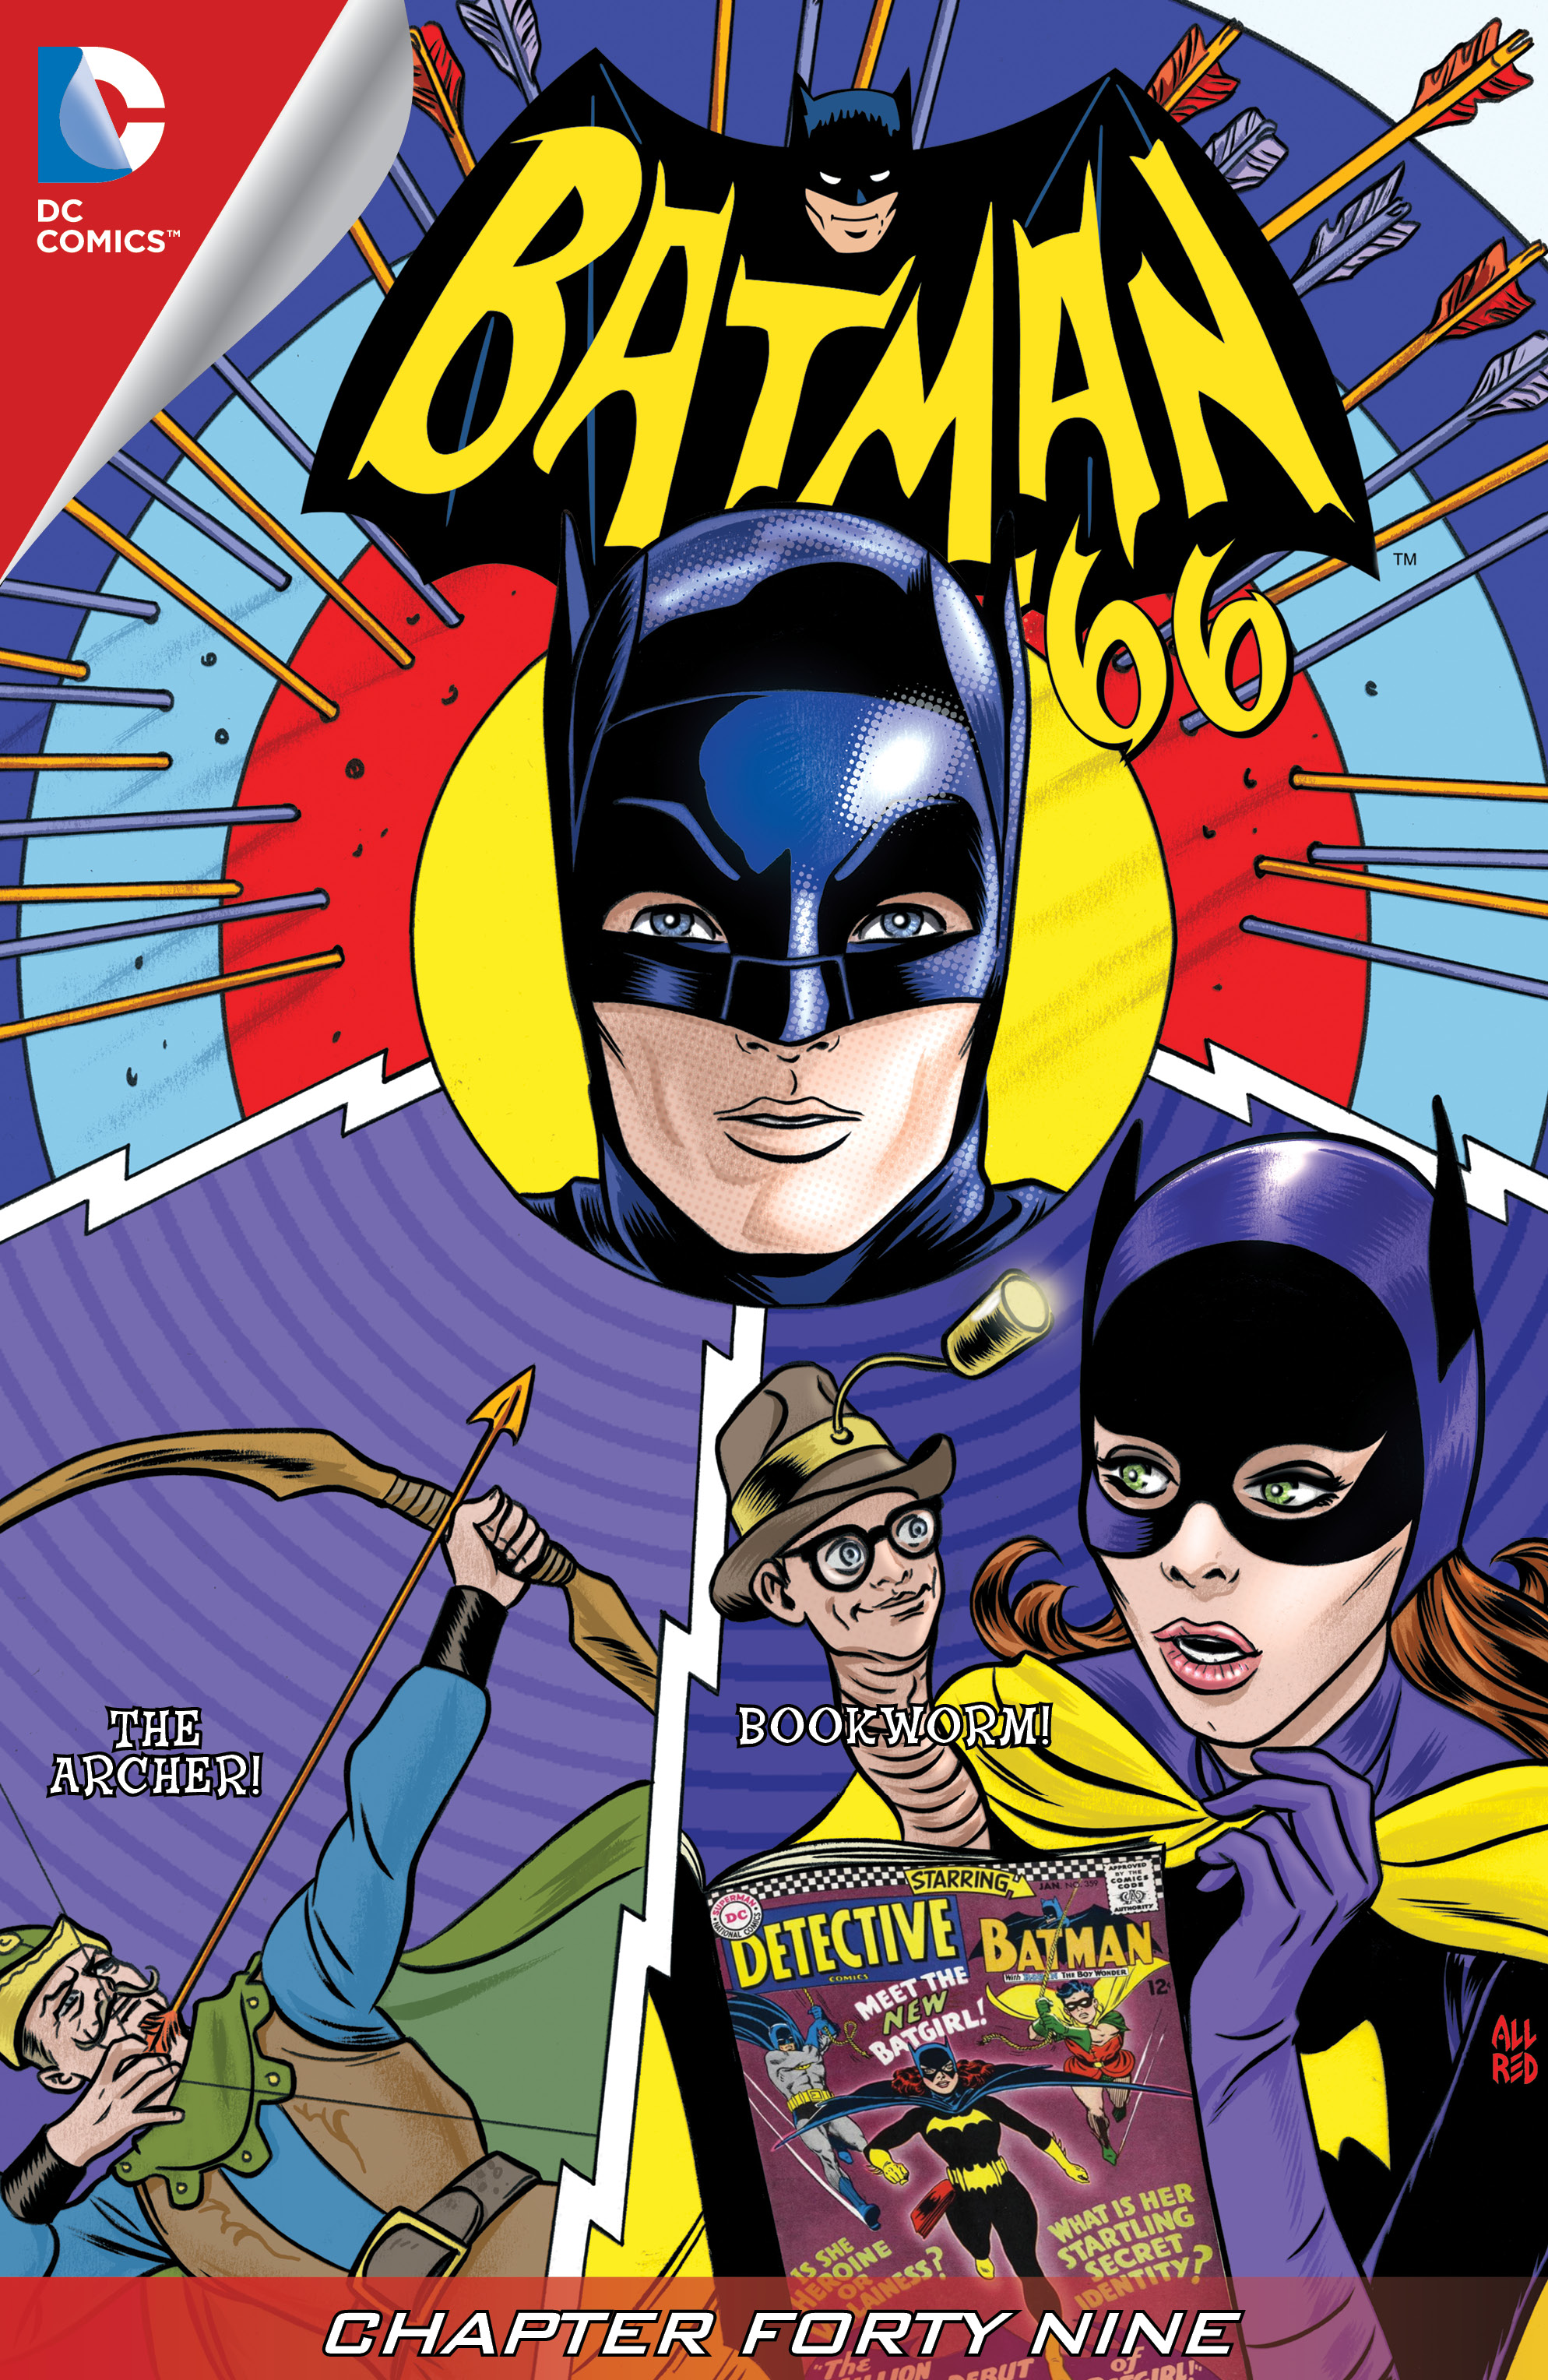 Batman '66 #49 preview images